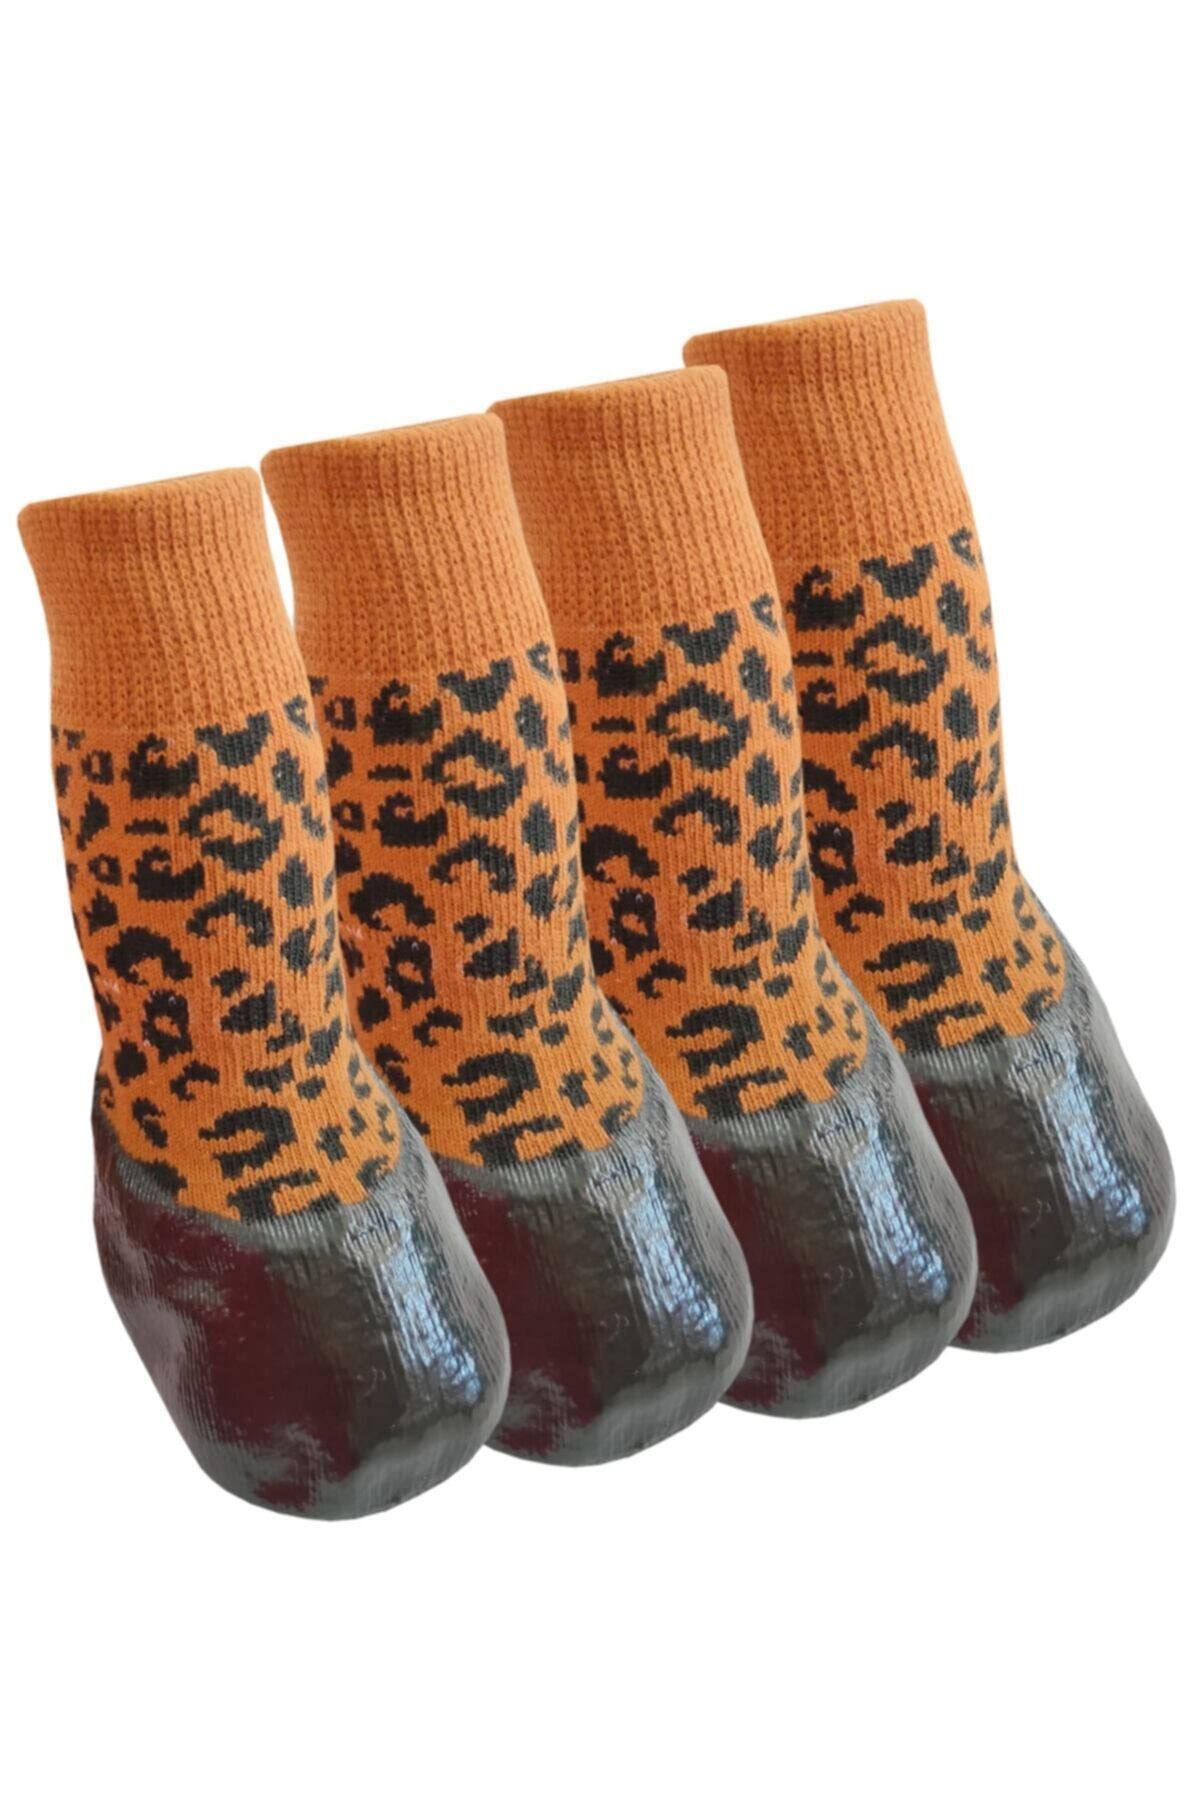 Trixie Kedi Köpek Ayakkabı Çorap Nitril Kaplı Örme Kışlık Çorap Kahverengi Leopar Desen Br21